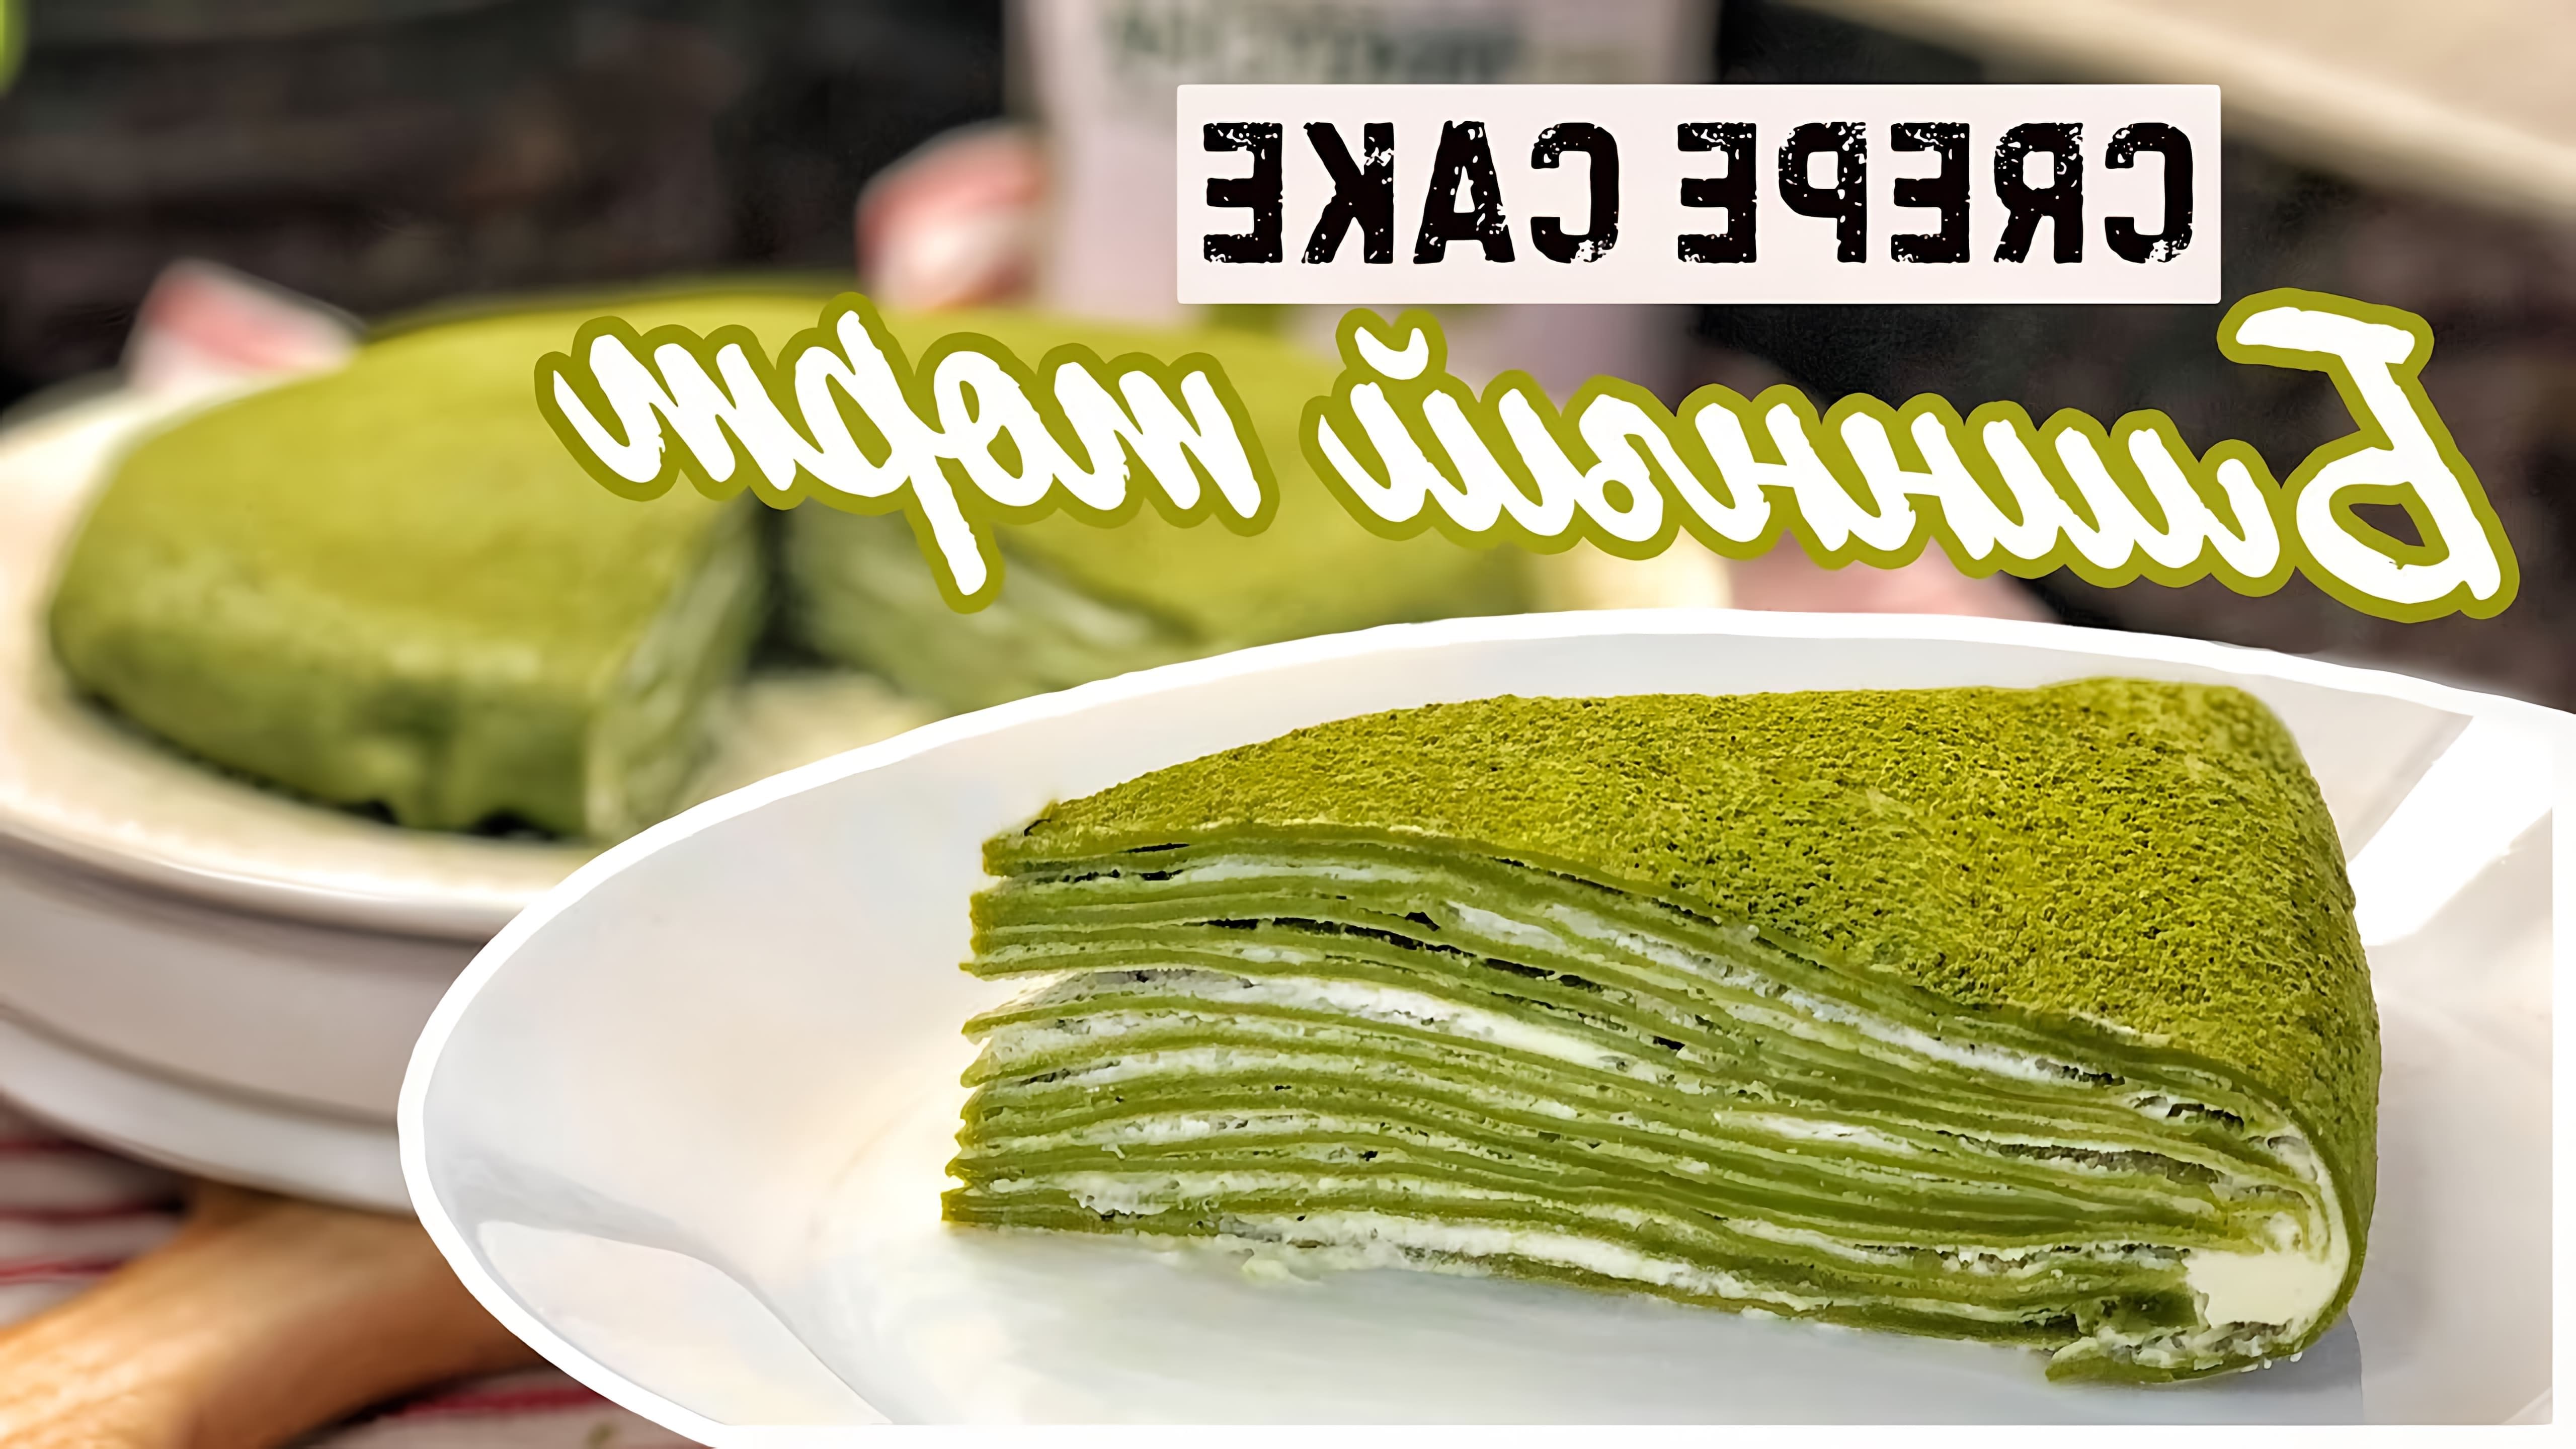 В этом видео демонстрируется рецепт японского десерта - блинного торта с зеленым чаем матча